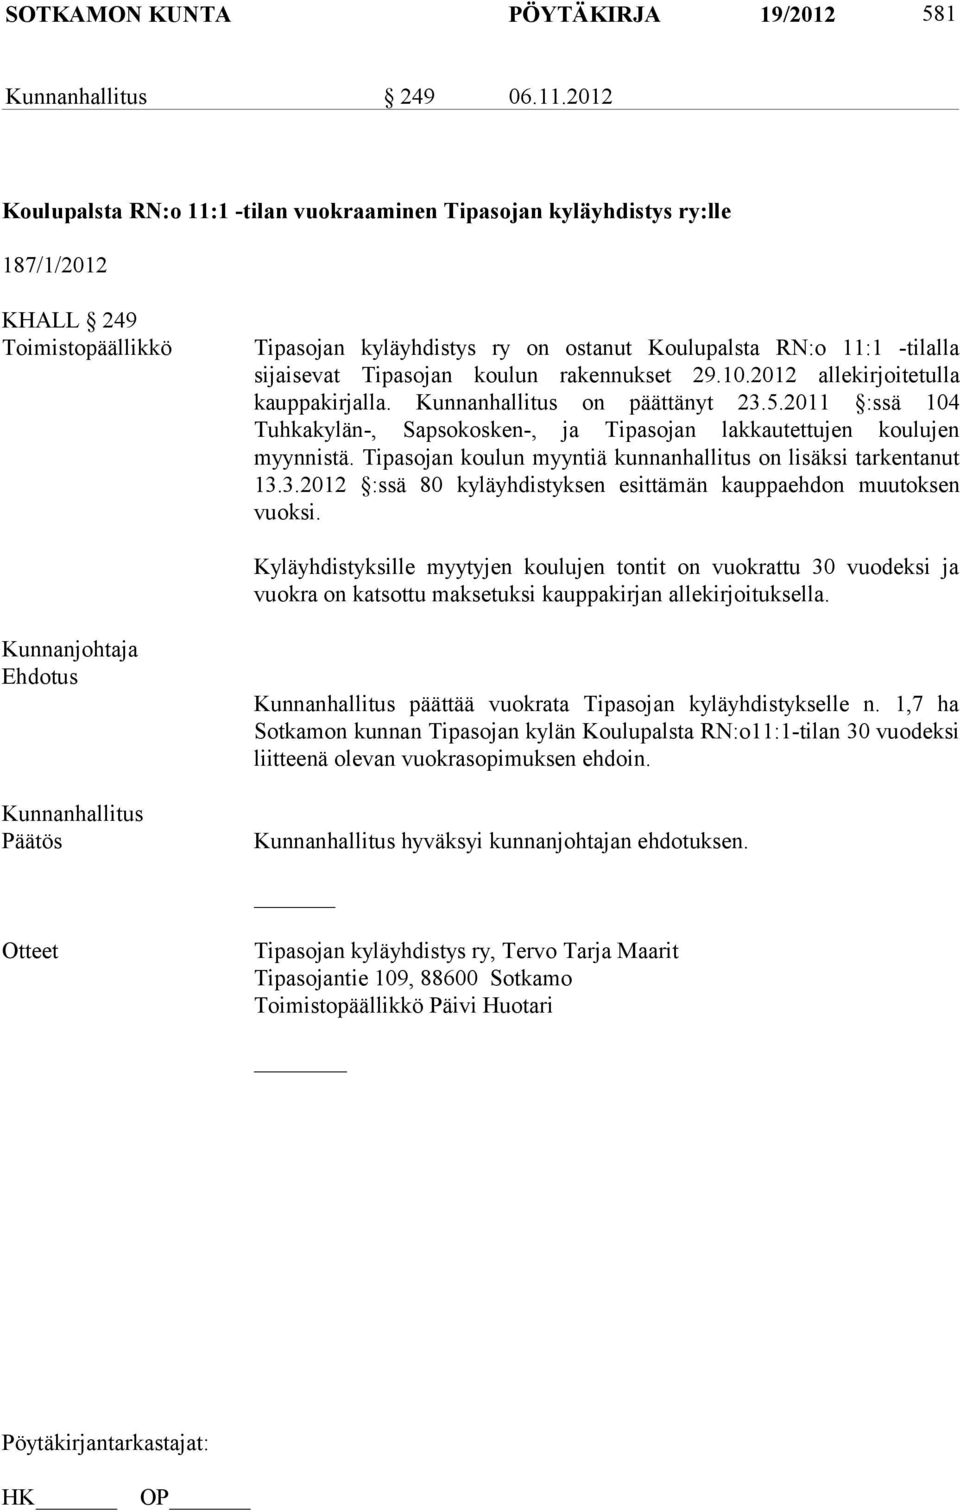 Tipasojan koulun rakennukset 29.10.2012 allekirjoitetulla kauppakirjalla. on päättänyt 23.5.2011 :ssä 104 Tuhkakylän-, Sapsokosken-, ja Tipasojan lakkautettujen koulujen myynnistä.